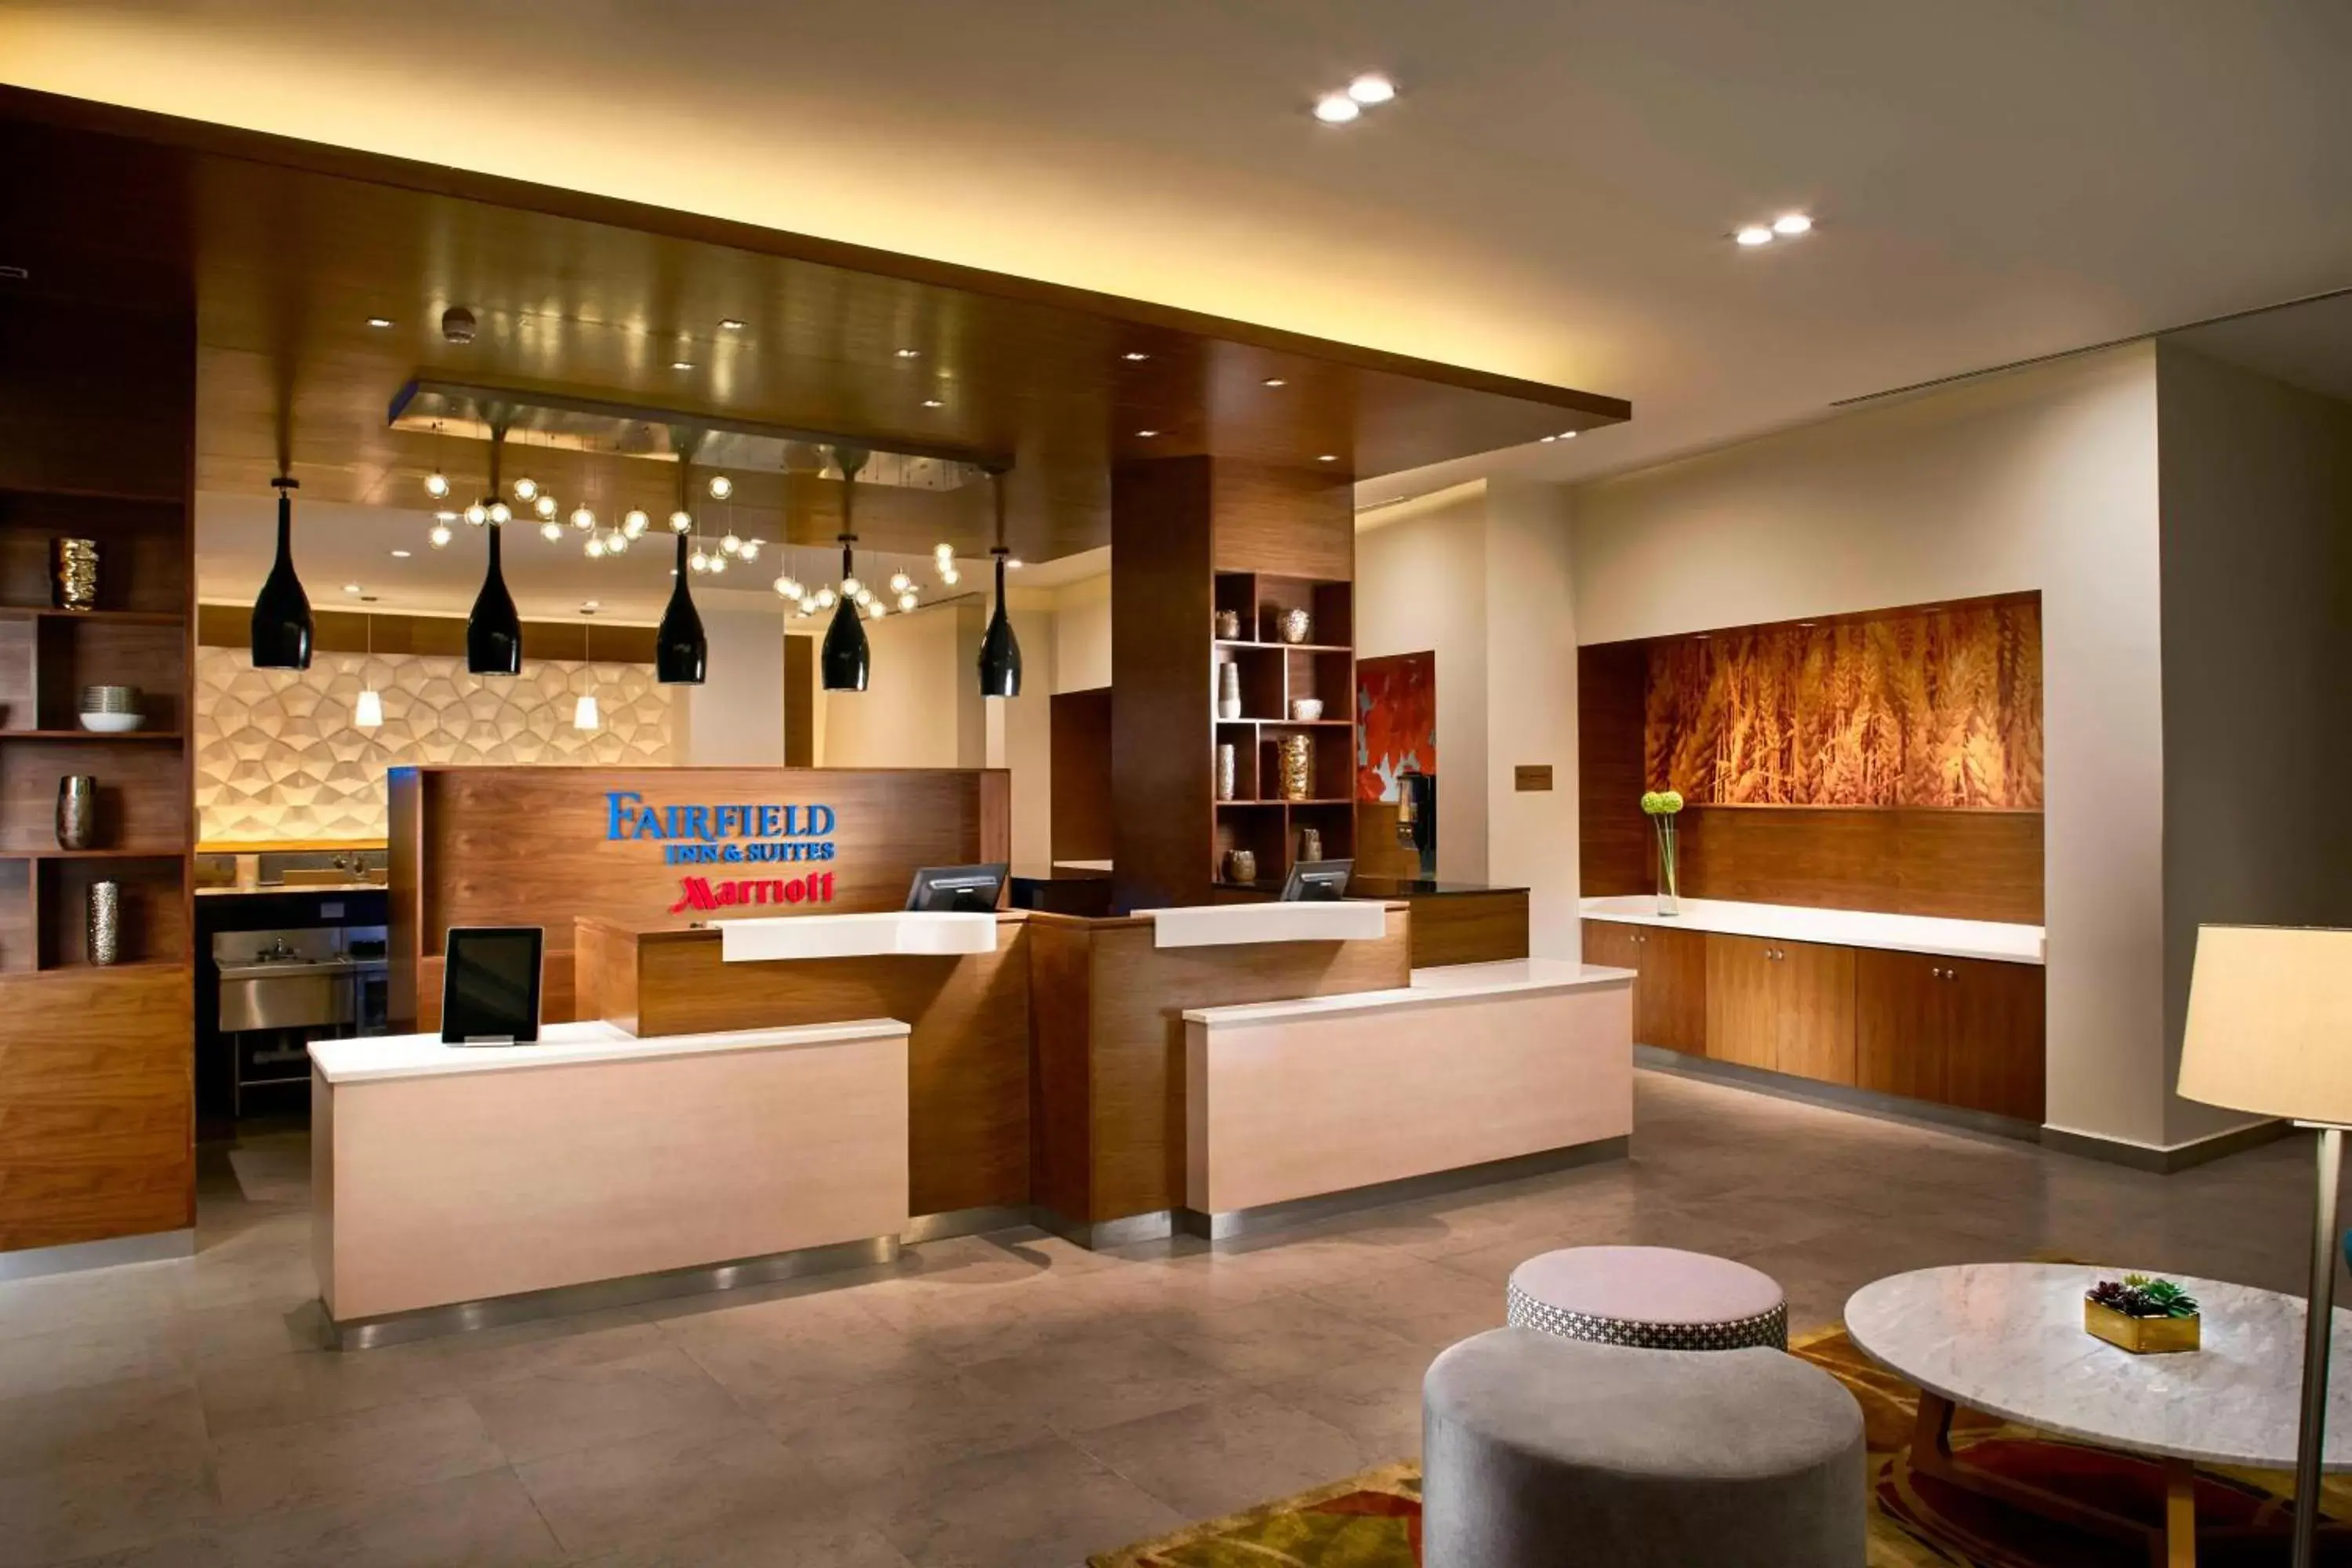 Lobby or reception, Lobby/Reception in Fairfield Inn & Suites by Marriott Villahermosa Tabasco